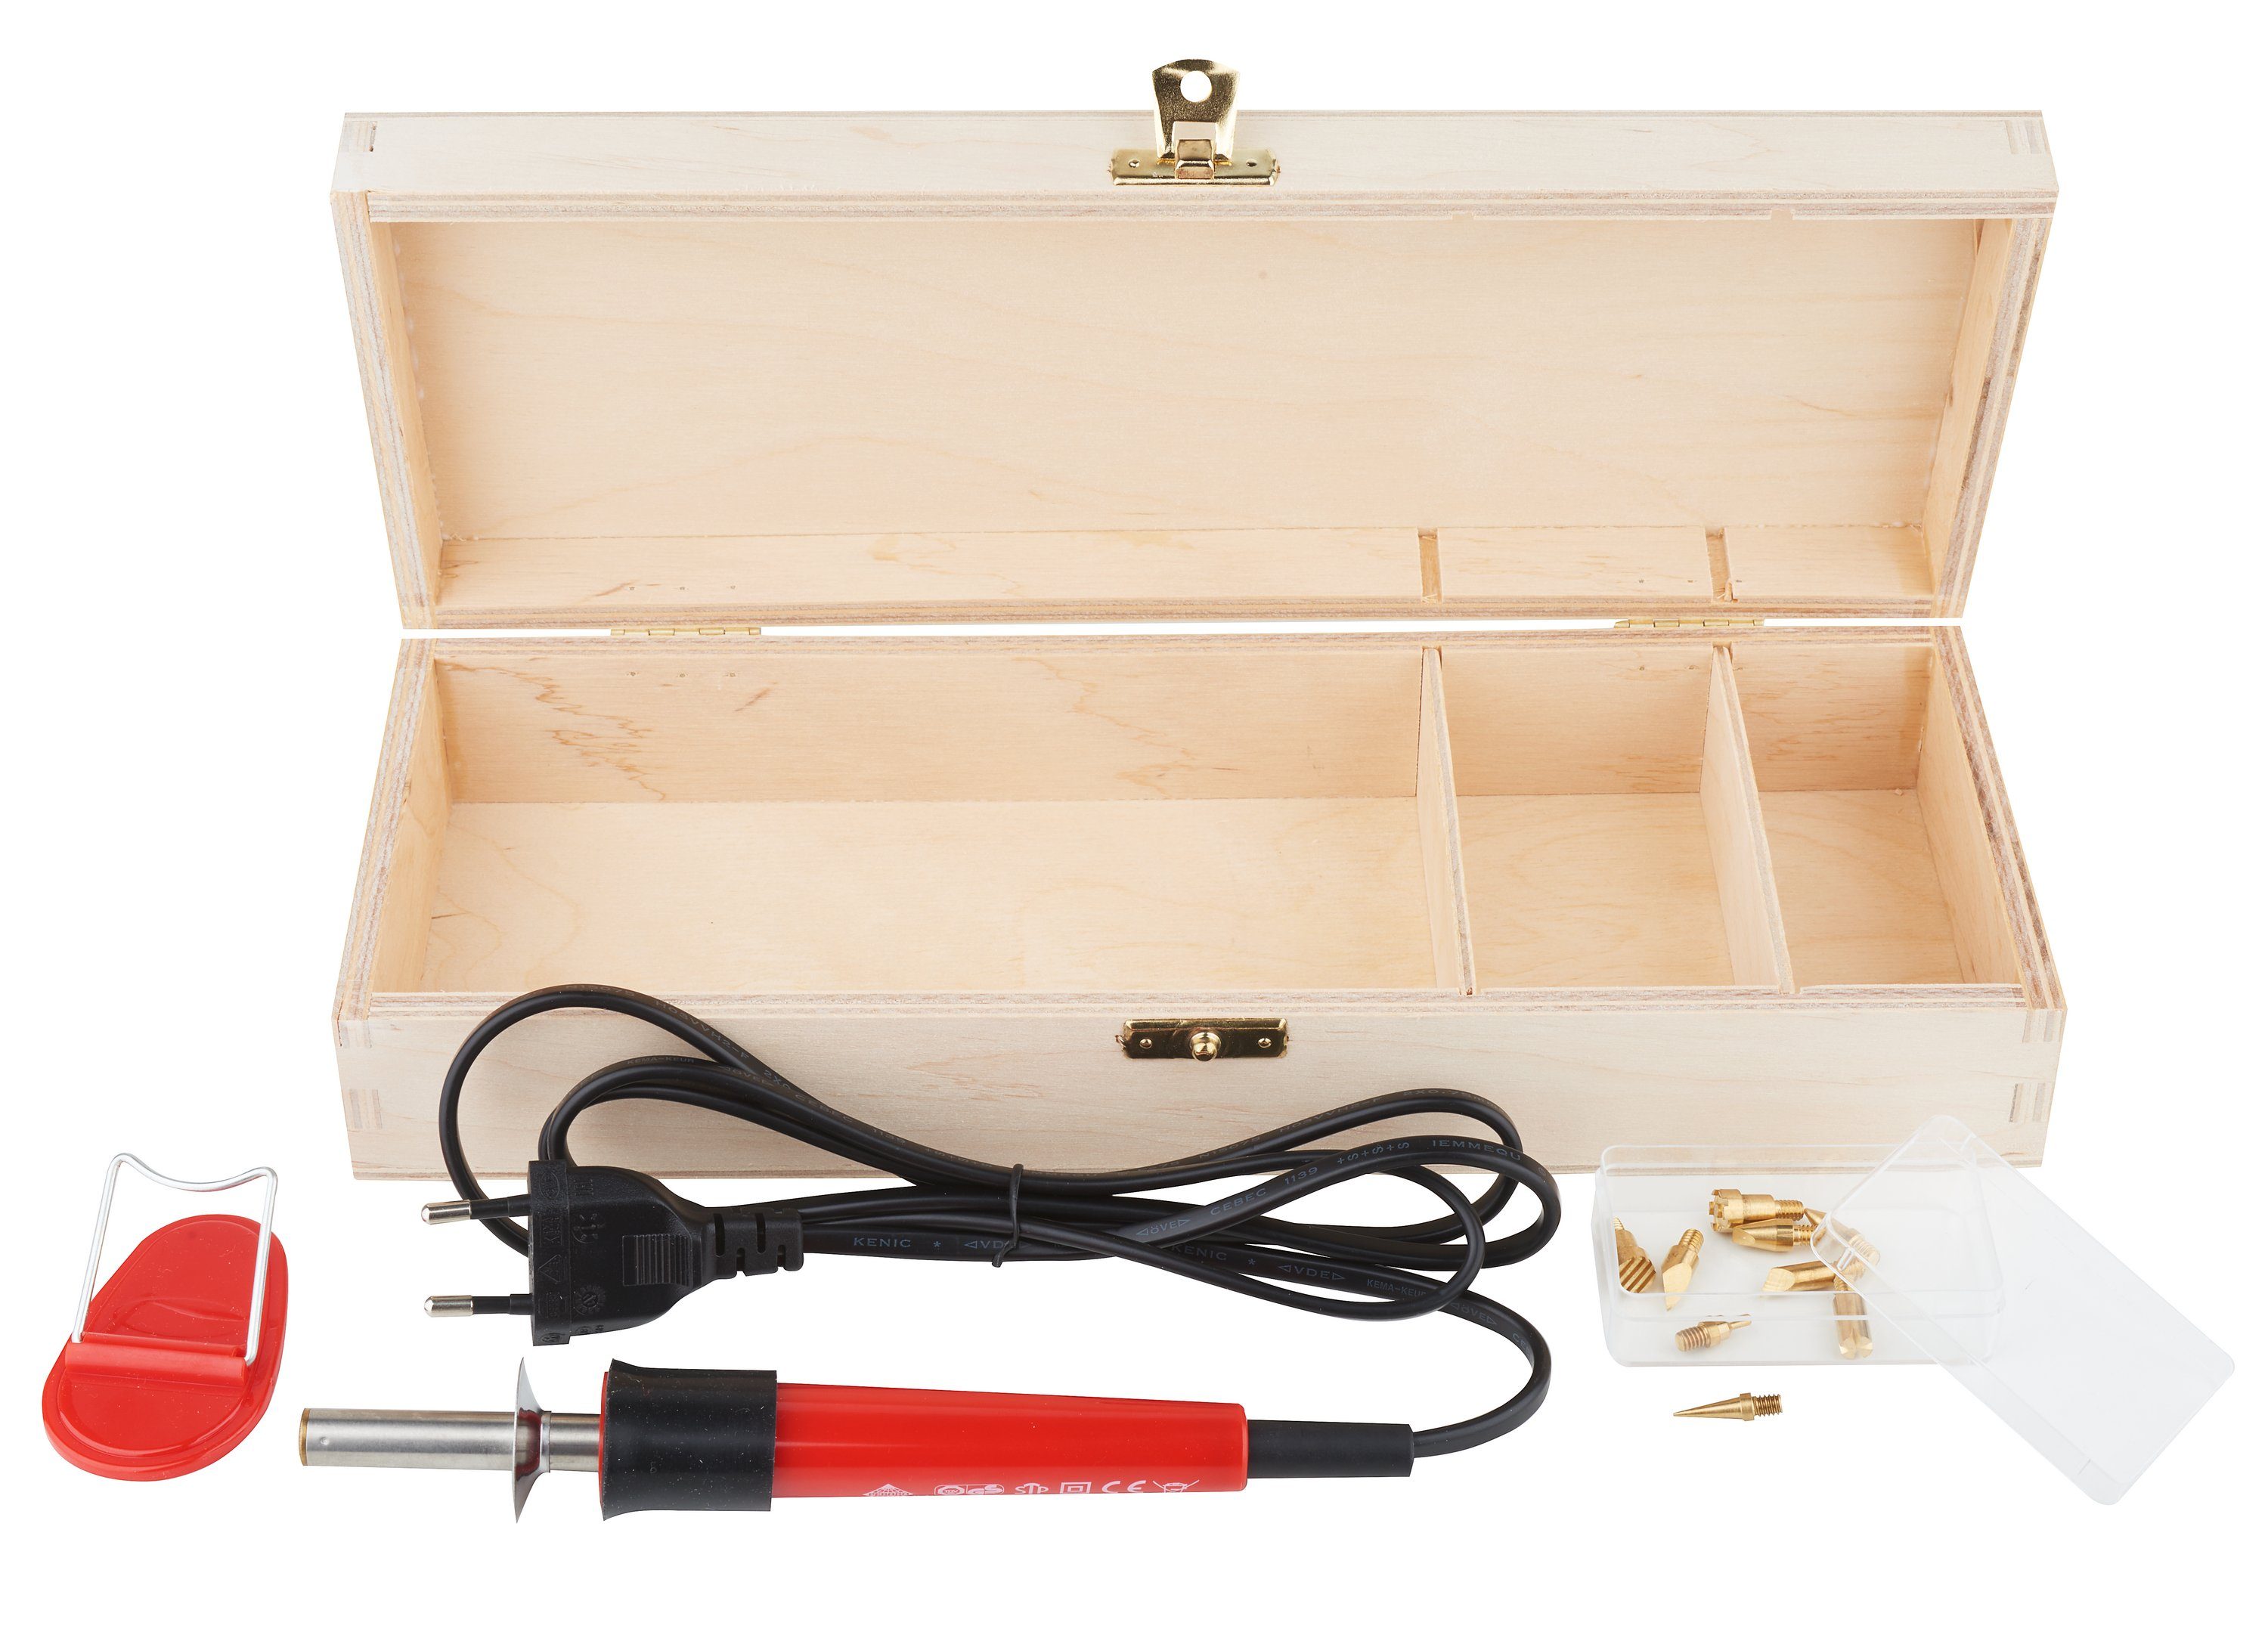 Pebaro Elektrowerkzeug-Set, inkl. Brennspitze, 13 Teile | Elektronik-Tool-Kit